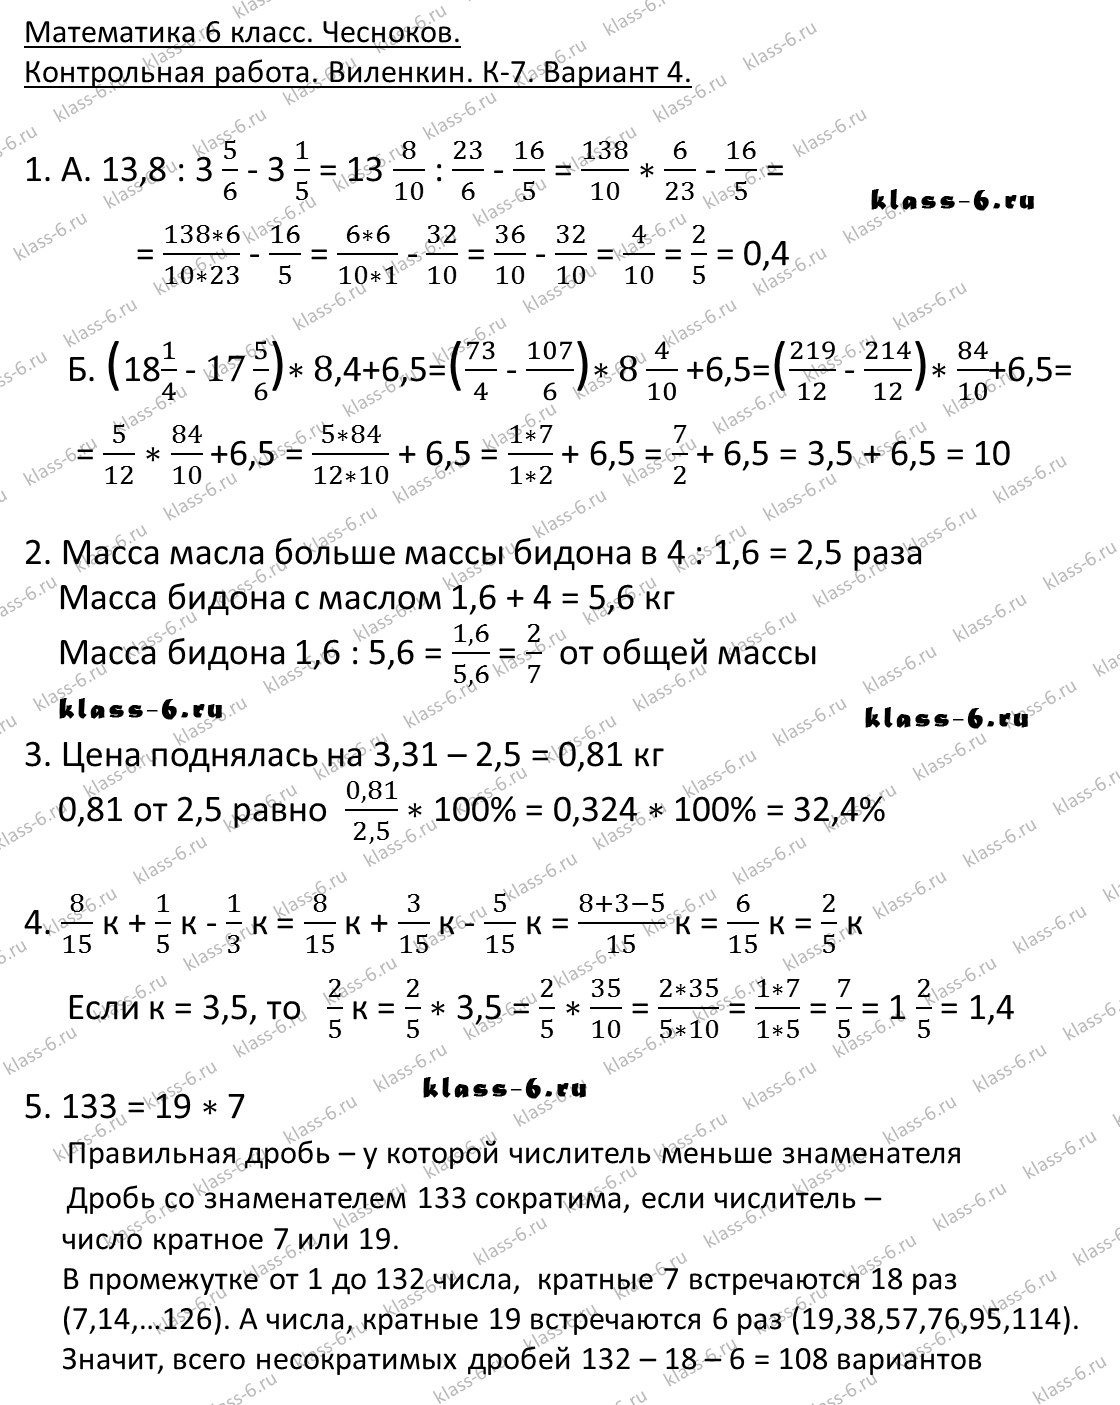 гдз математика Чесноков дидактические материалы 6 класс ответ и подробное решение с объяснениями контрольной работы Виленкин задание 7 вариант 4